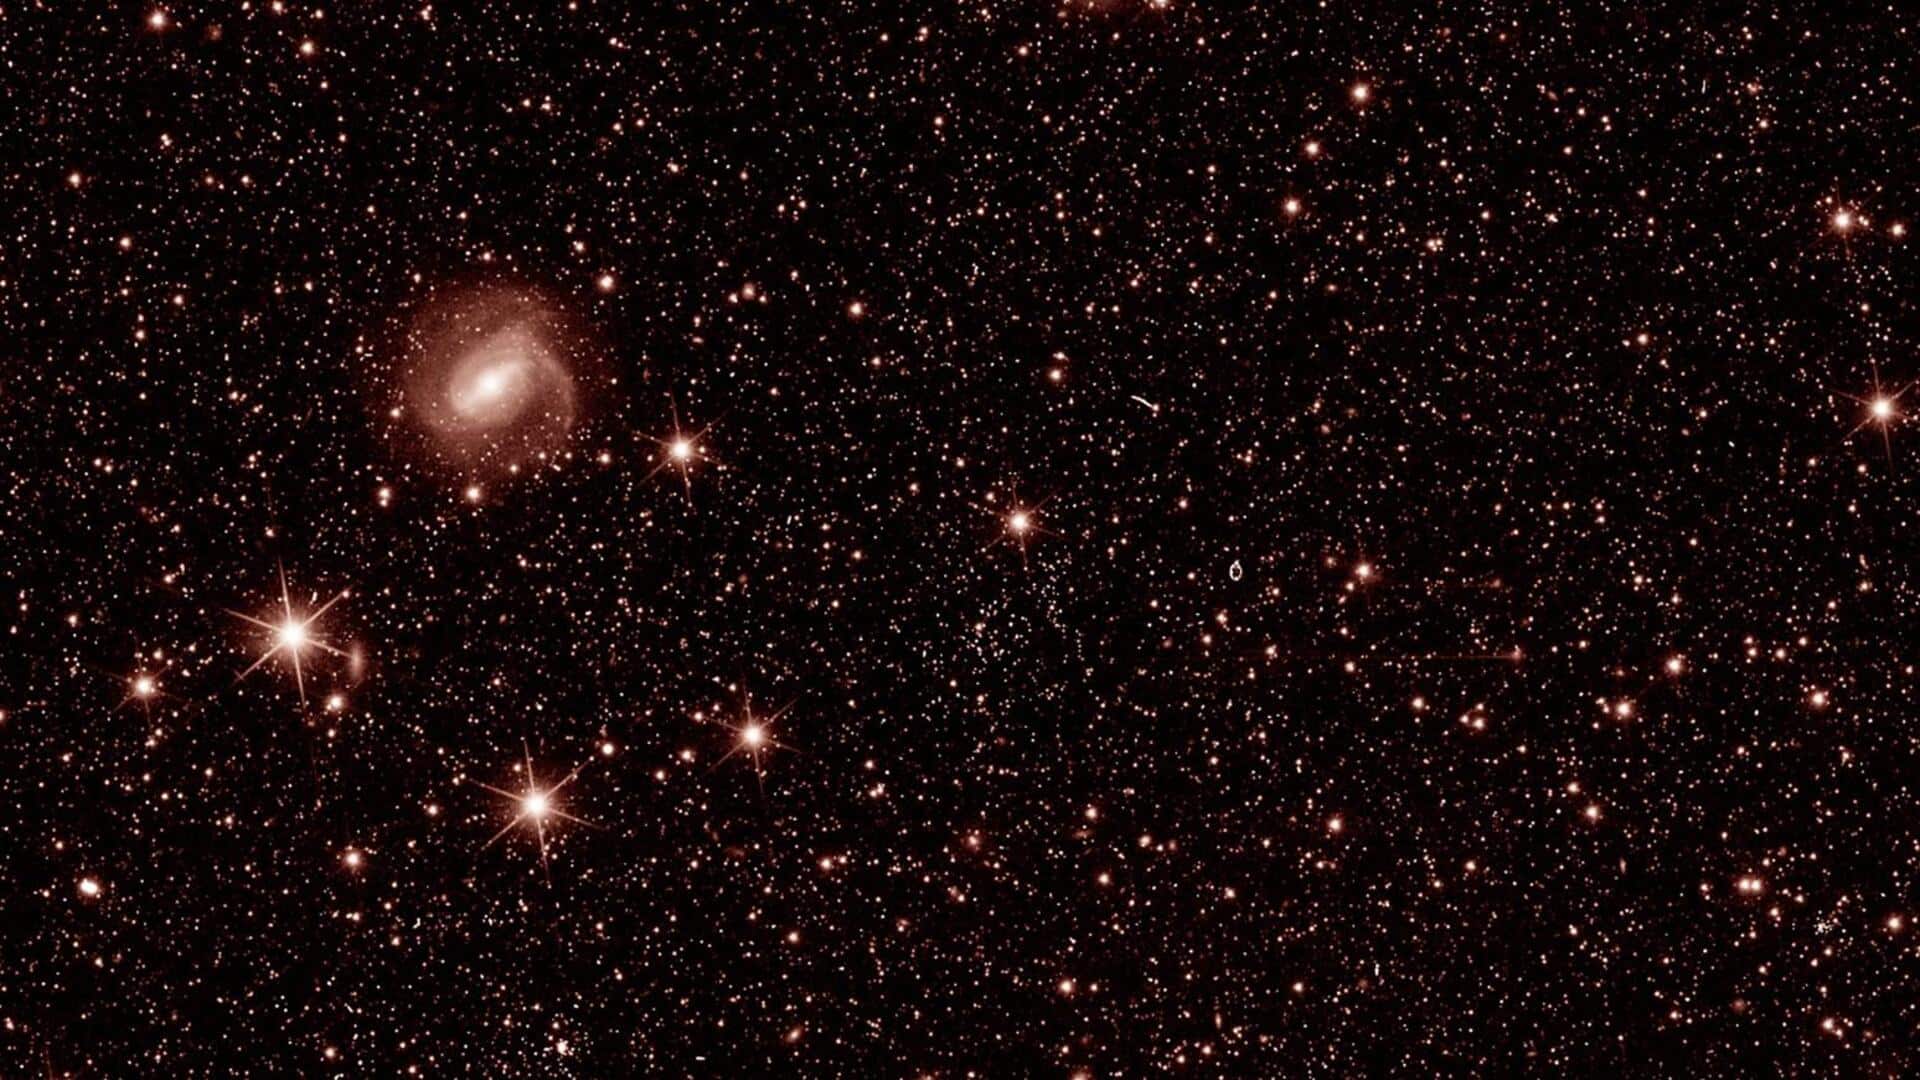 ESA के यूक्लिड टेलिस्कोप ने पृथ्वी पर भेजी पहली तस्वीर, आकाशगंगा का किया जाएगा अध्ययन